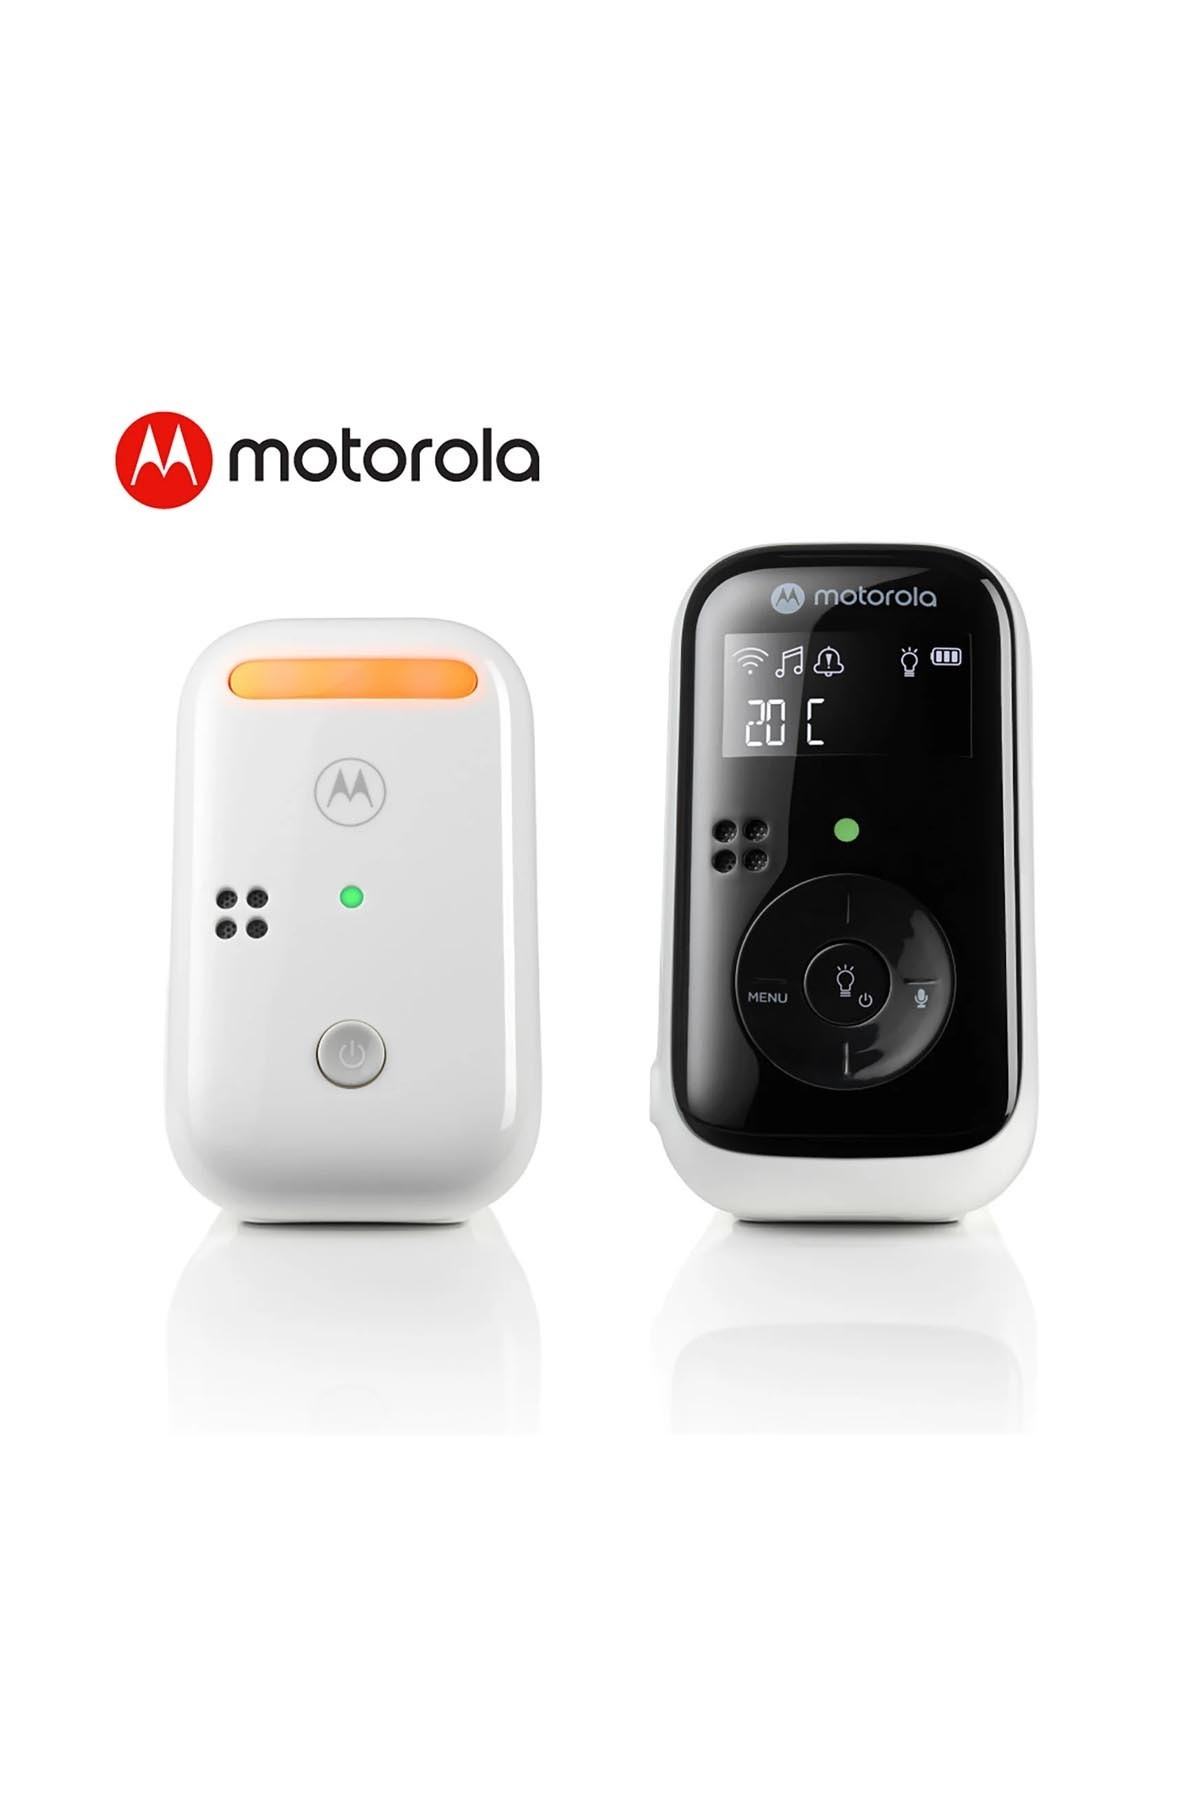 Motorola PİP11 Dect Dijital Ekranlı Bebek Telsizi